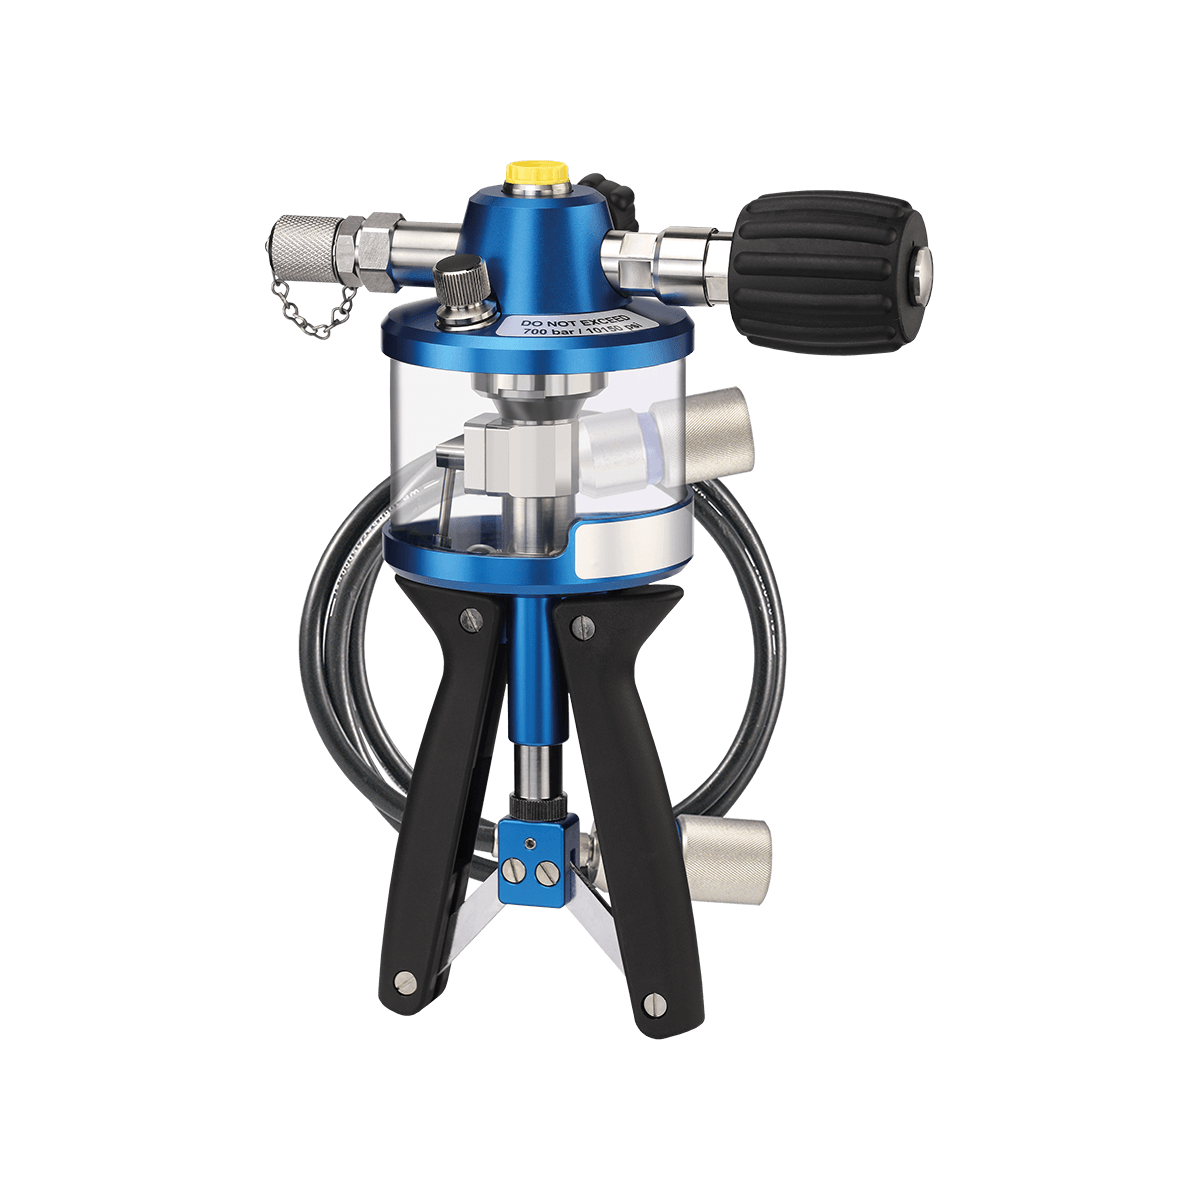 Test pump hydraulic P1000.2 pressure hose